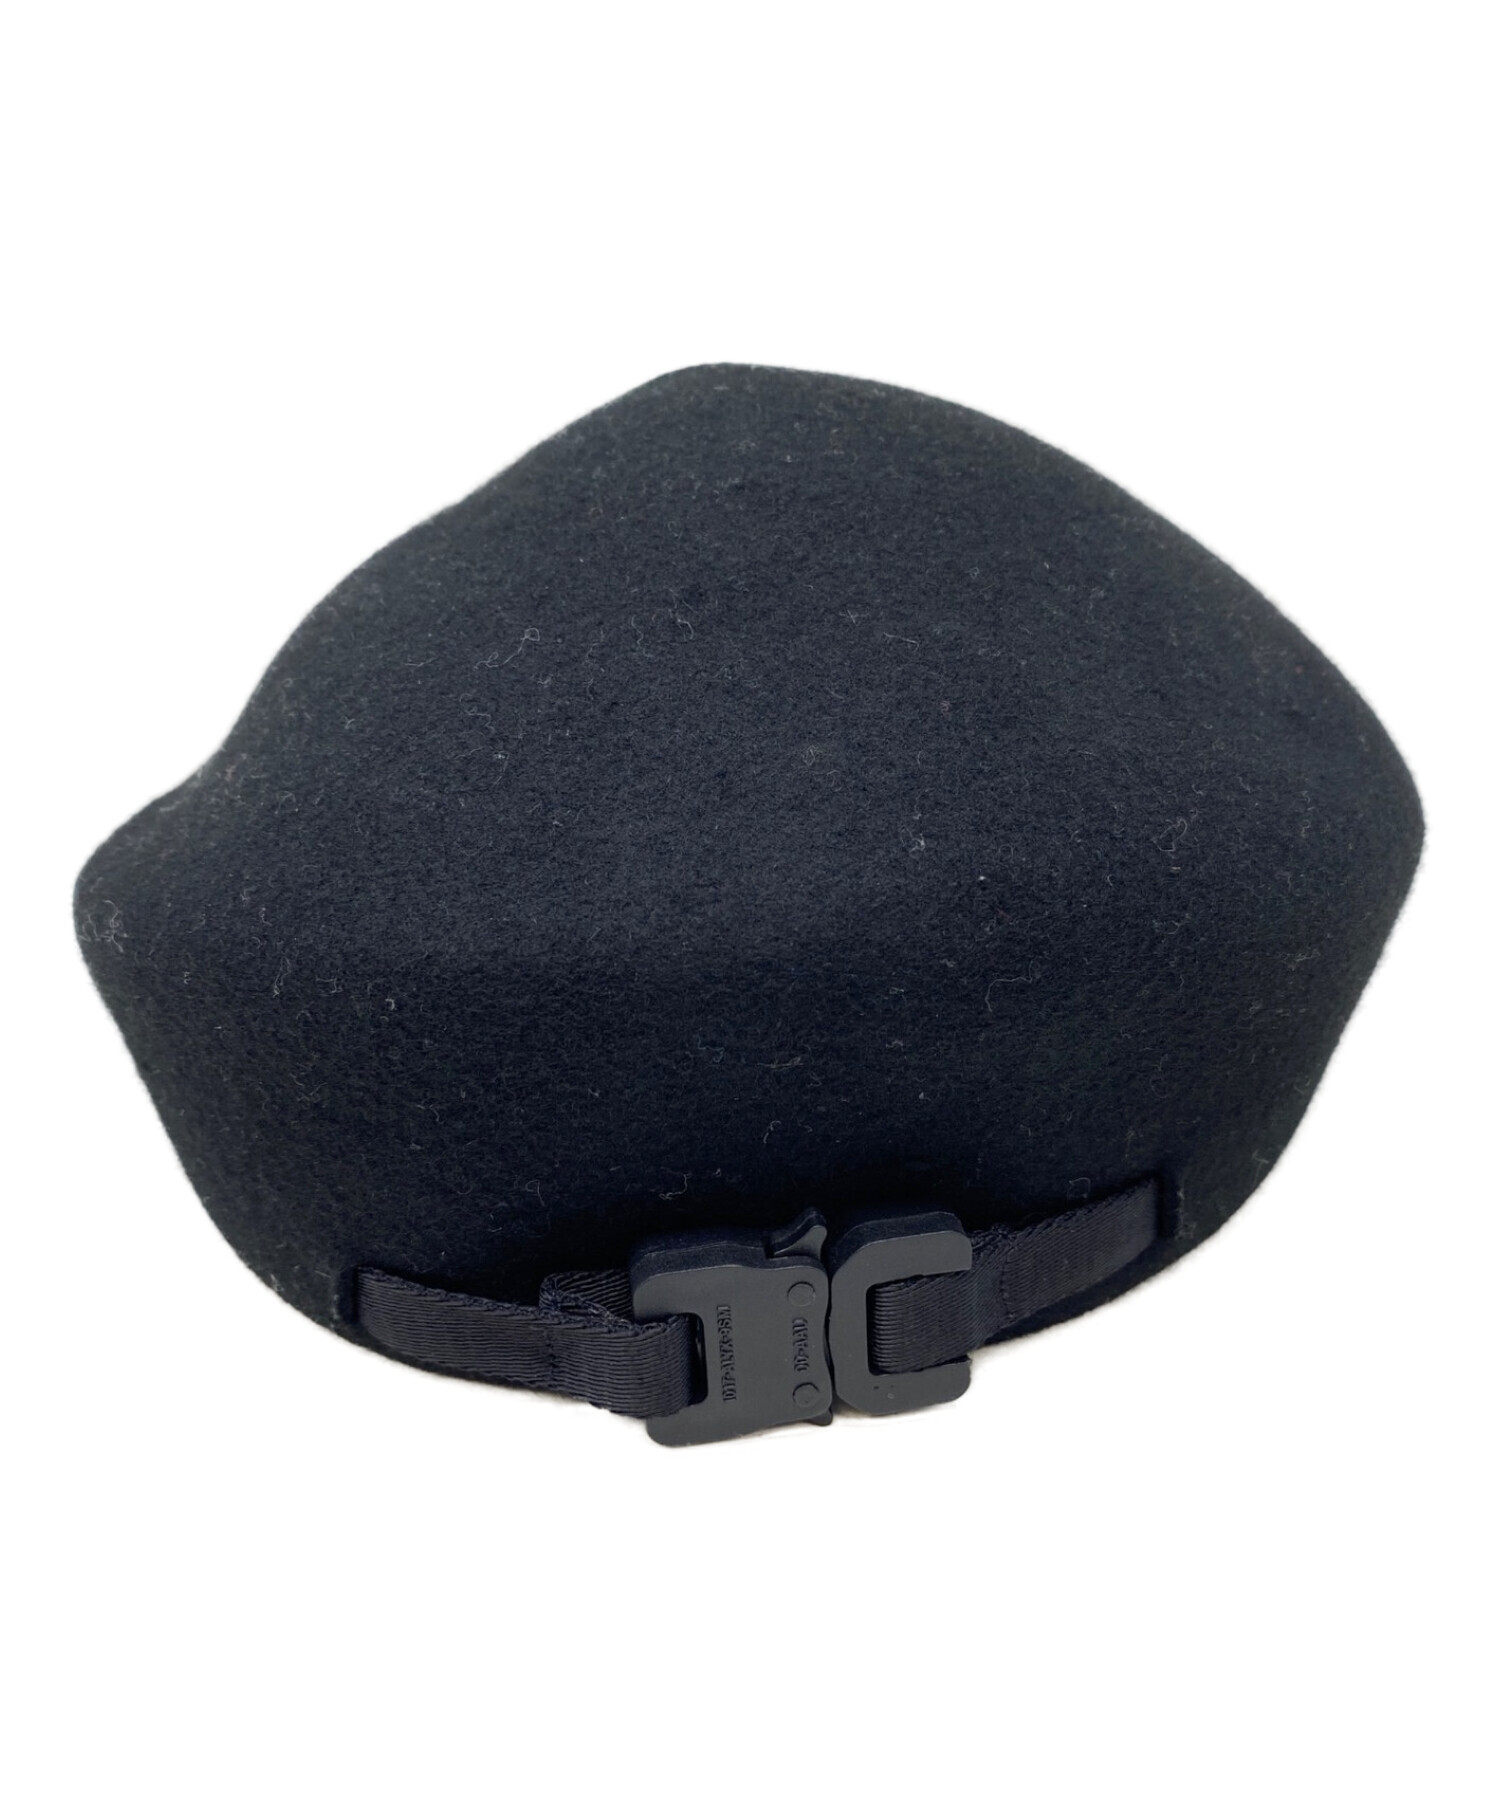 7,590円美品 1017 ALYX 9SM アリクス ベレー帽 黒 S-M ユニセックス